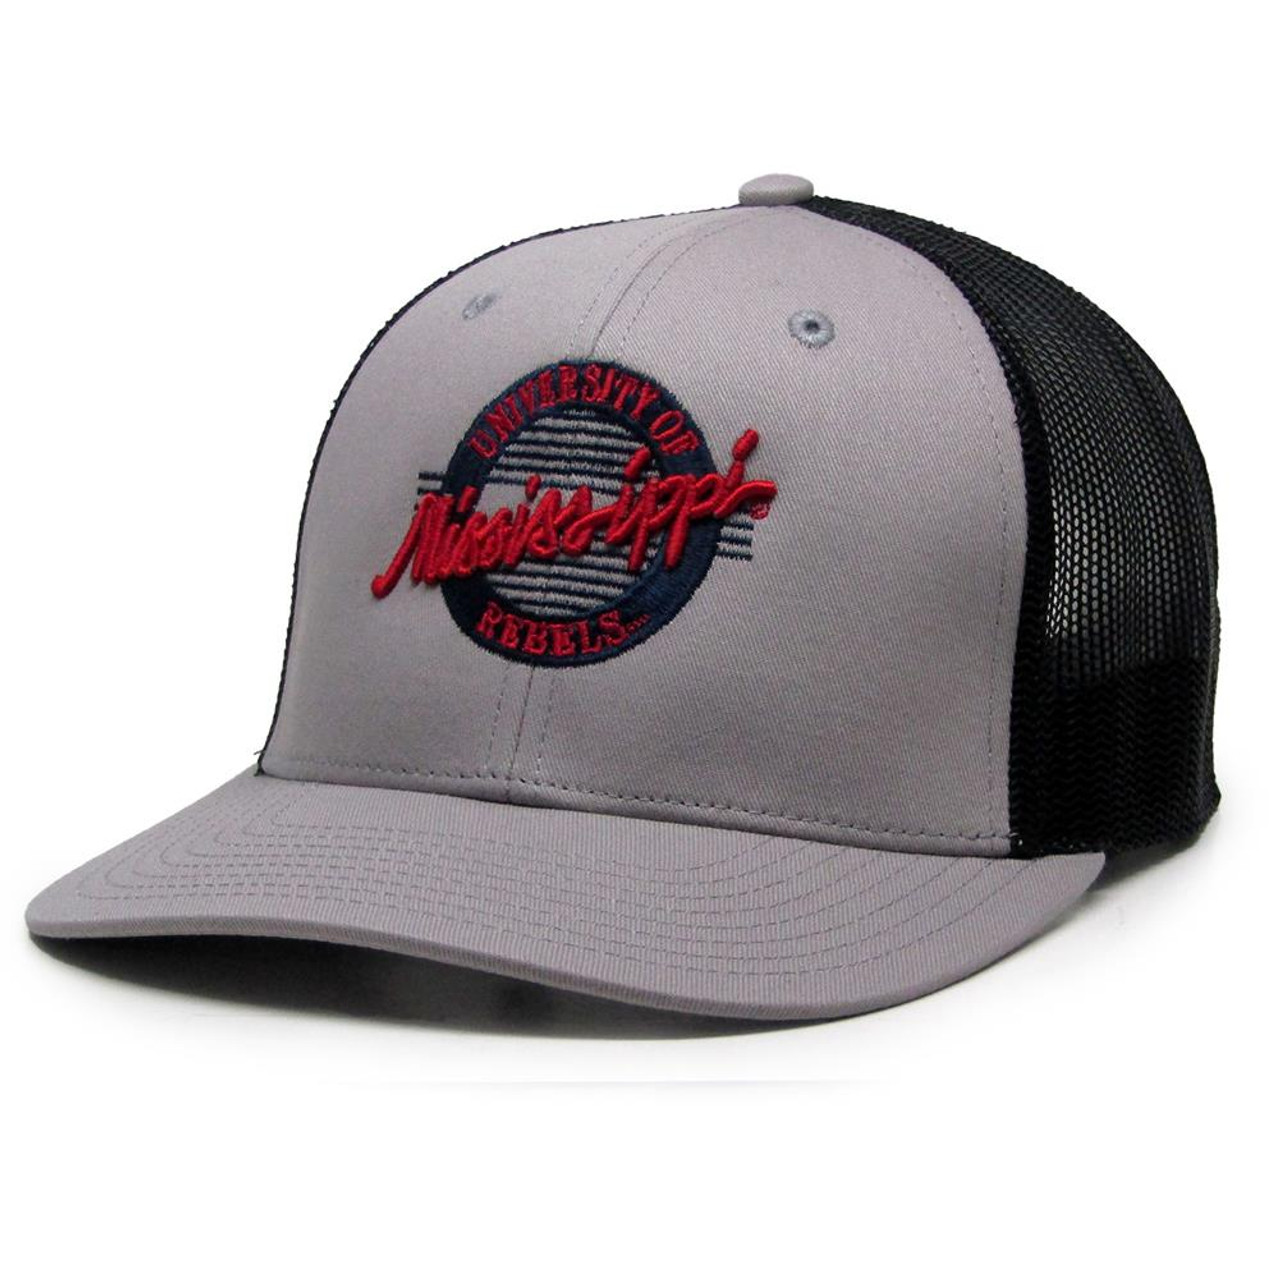 University Louisville Hat Classic Adjustable Cardinals Mesh Trucker Cap